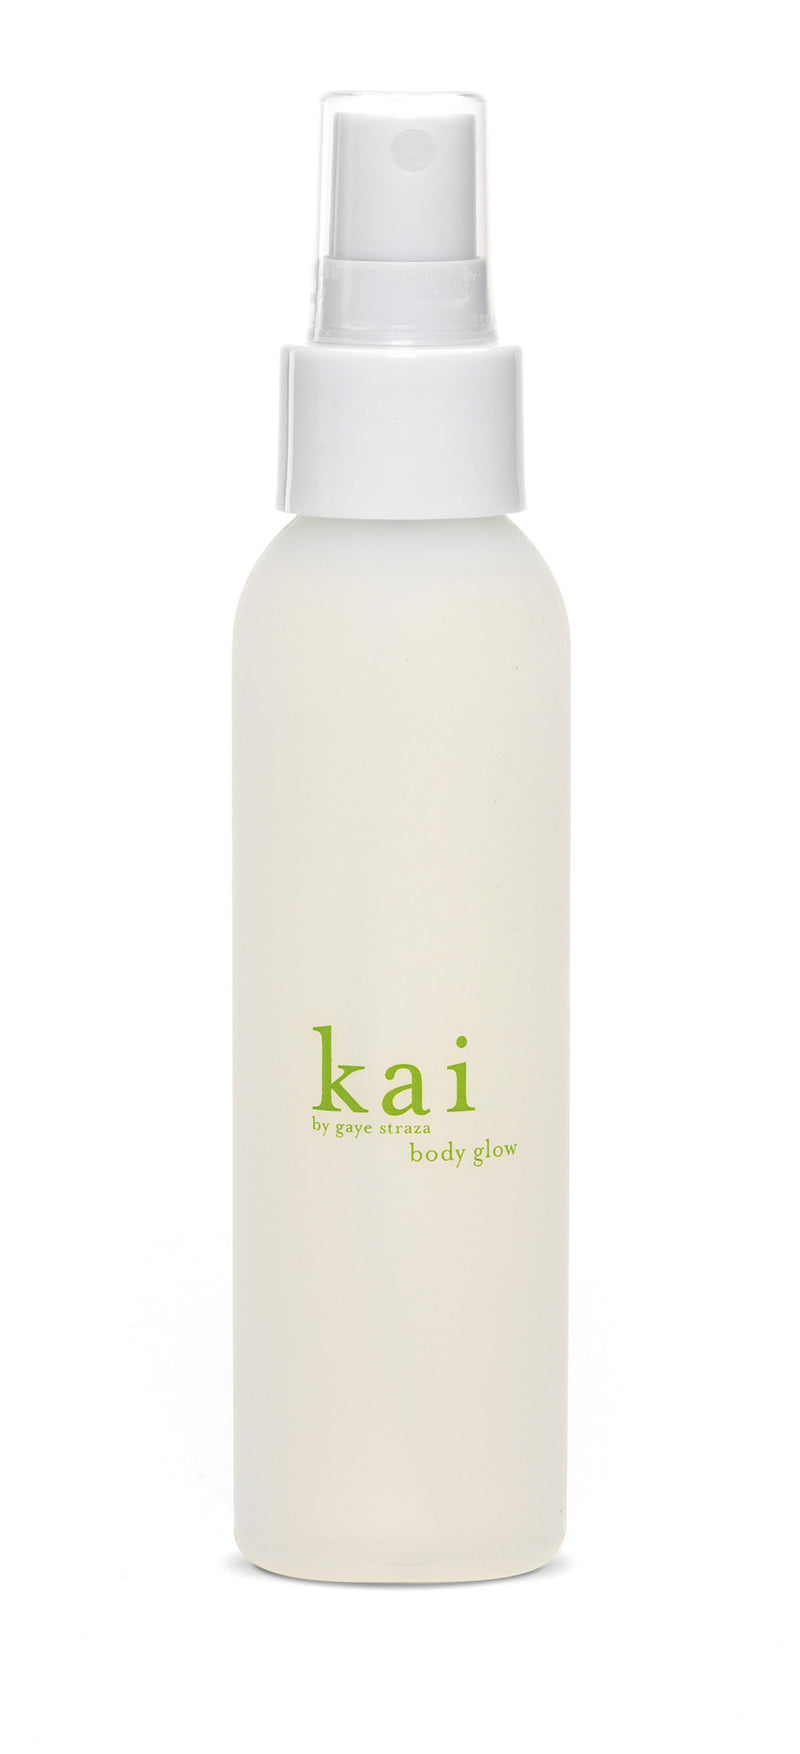 media image for kai body glow design by kai fragrance 1 249